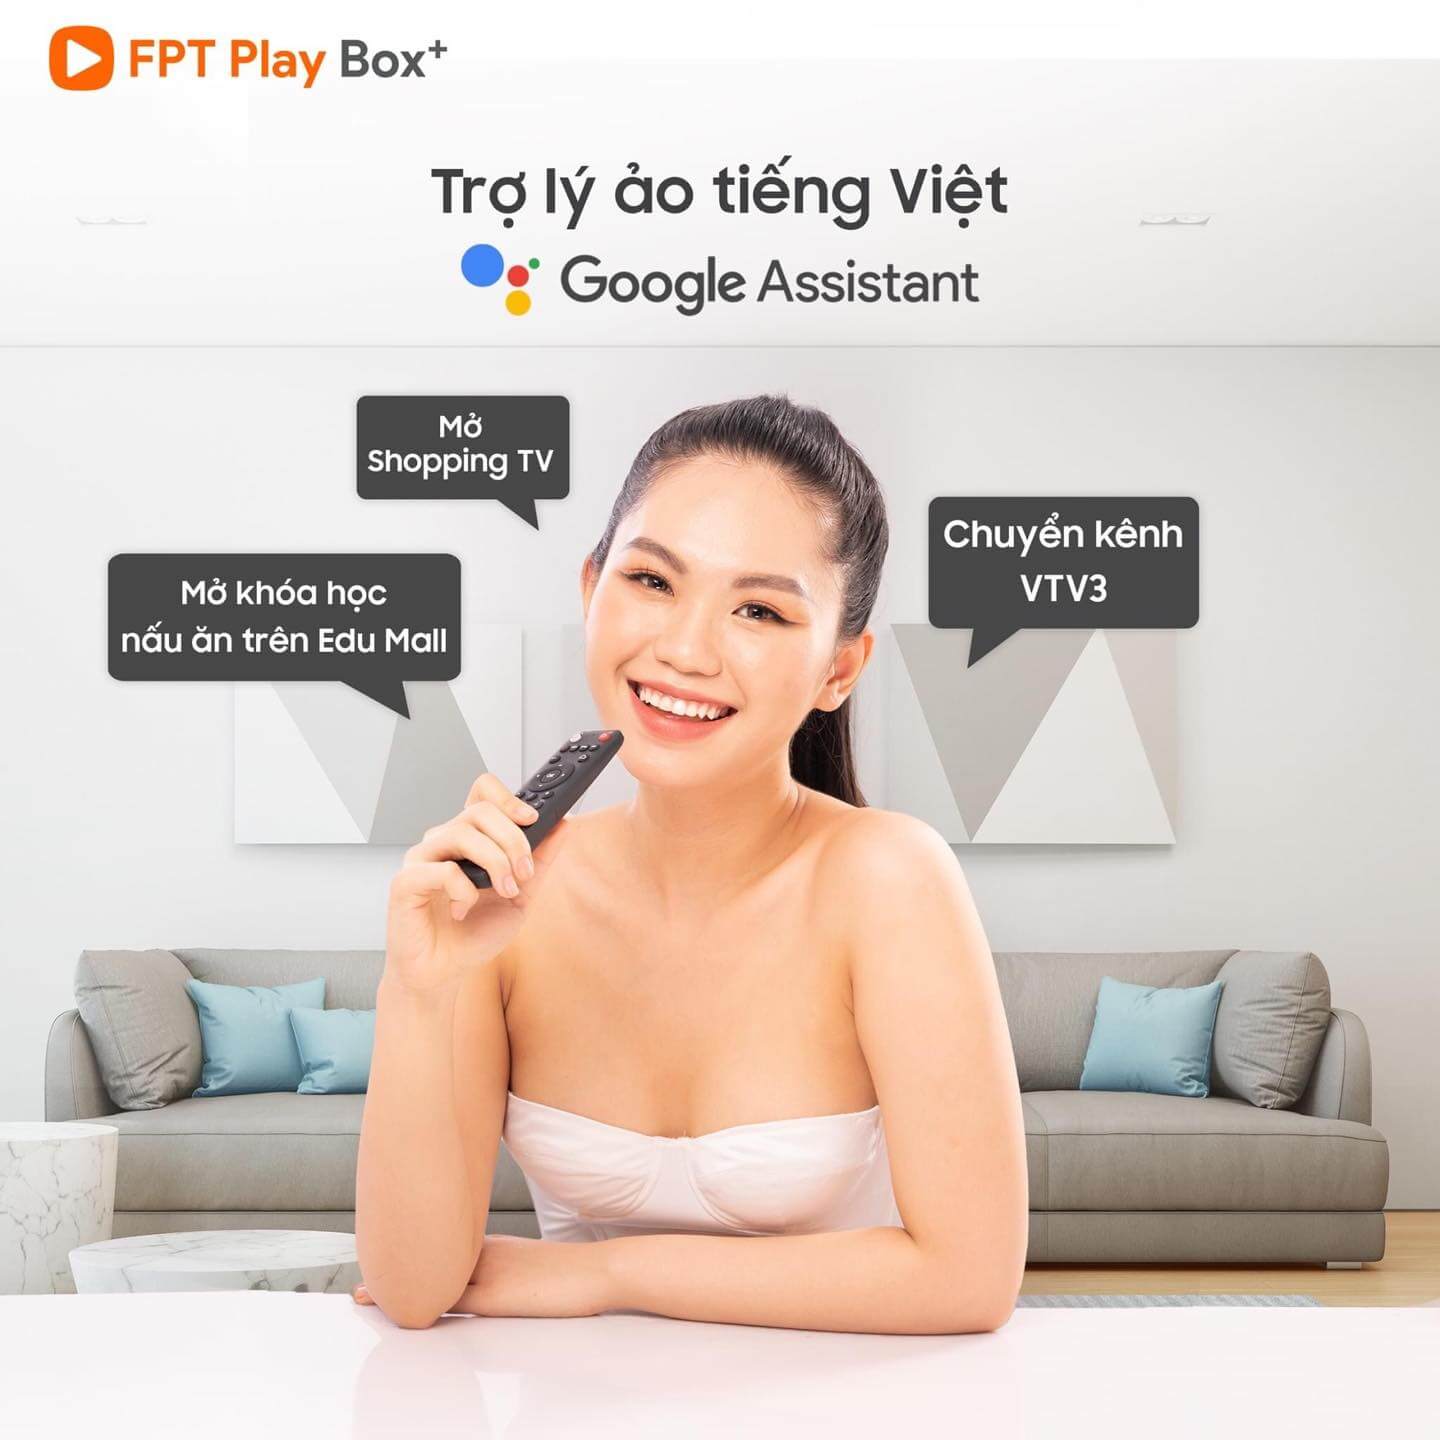 Trợ lý ảo tiếng Việt trên FPT Play Box 2020